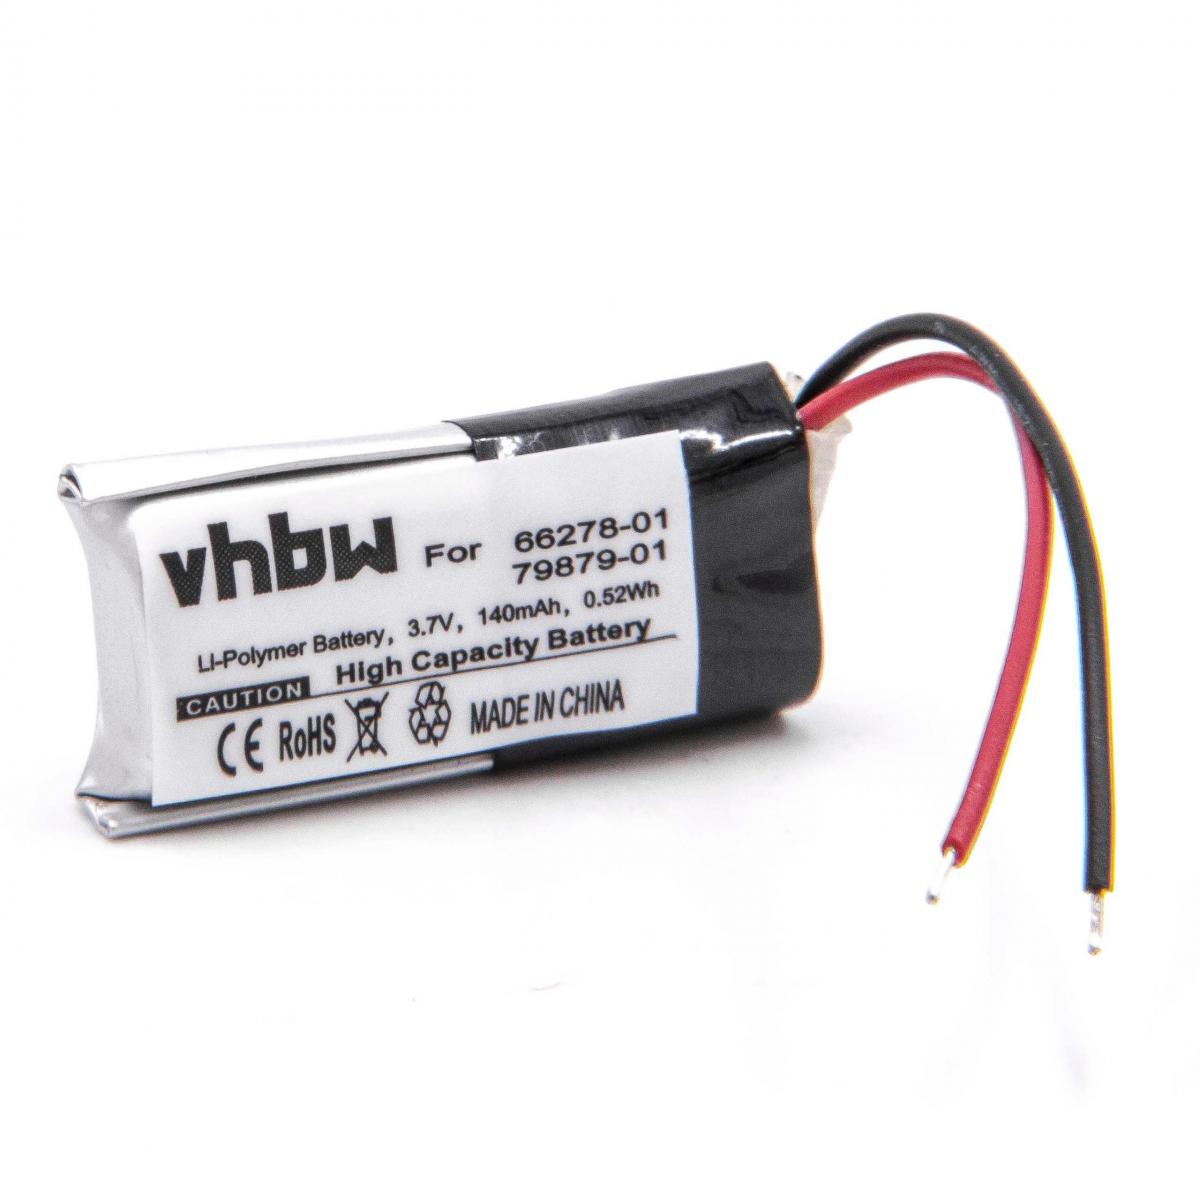 Vhbw - vhbw Li-Polymère batterie 140mAh (3.7V) pour casque écouteurs casque micro sans fil Plantronics Voyager Pro, Pro HD, Pro UC, Pro+ - Batteries électroniques